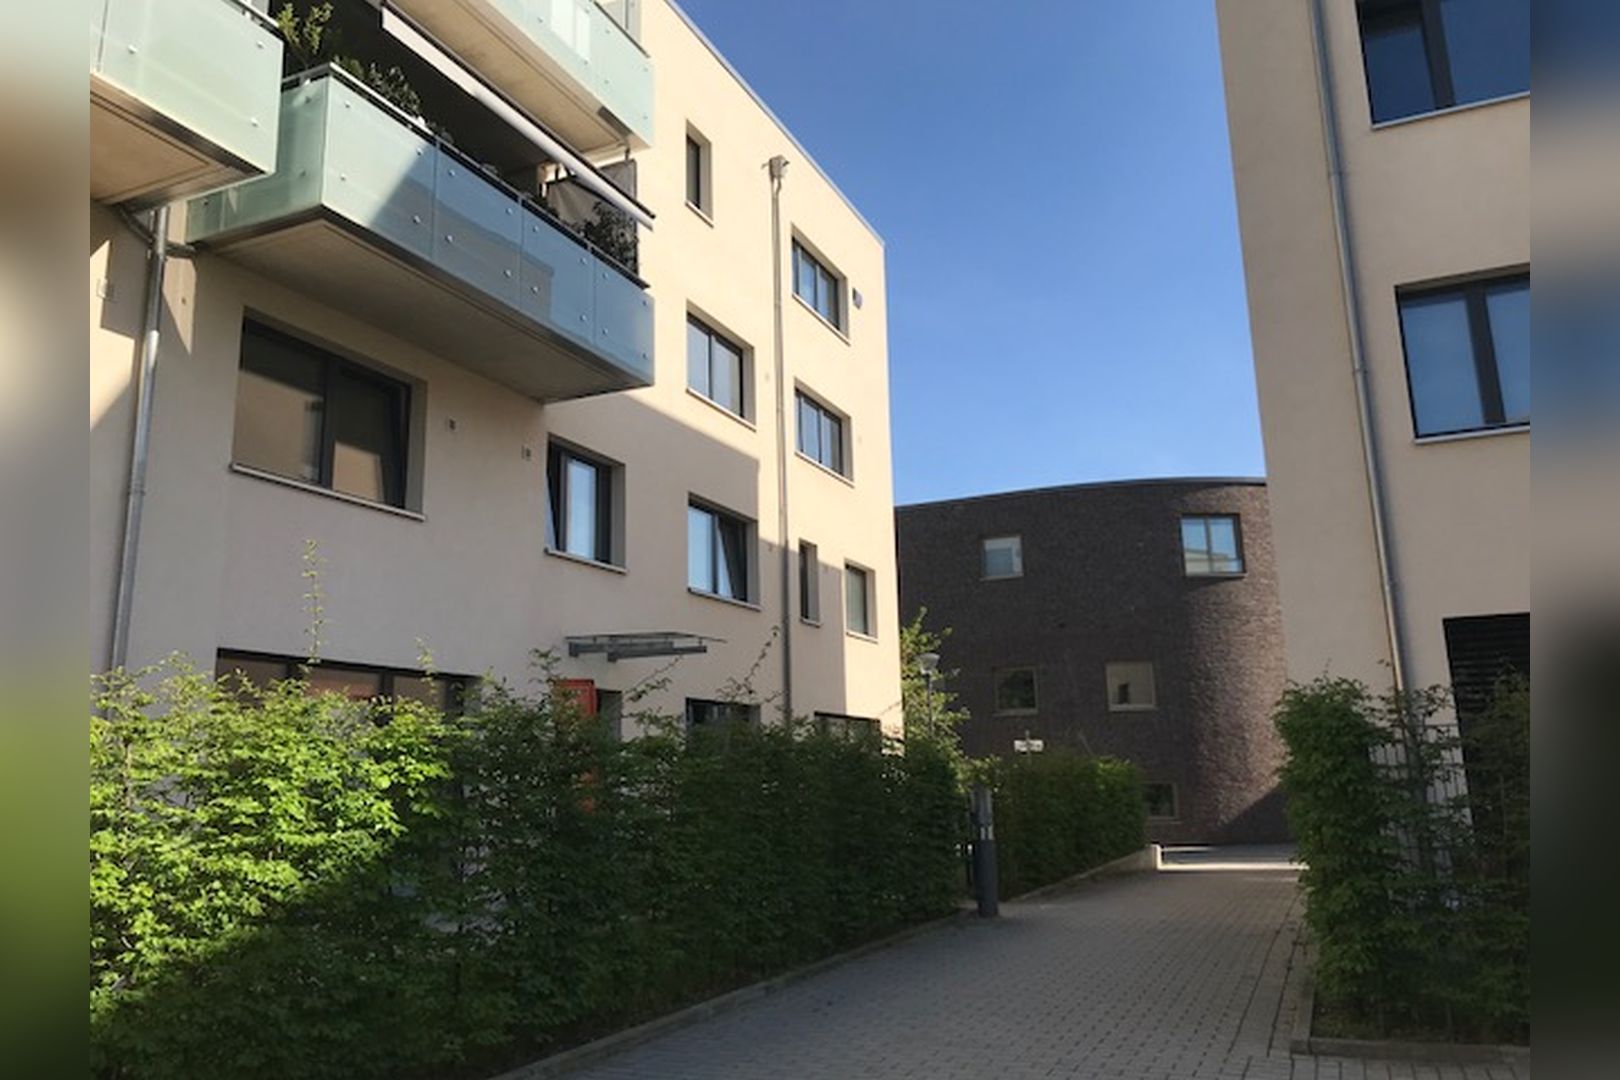 Immobilie Nr.Hilden WE 03 - 4-Zimmer-Maisonettewohnung über EG + OG mit Terrasse und Garten - Bild 17.jpg